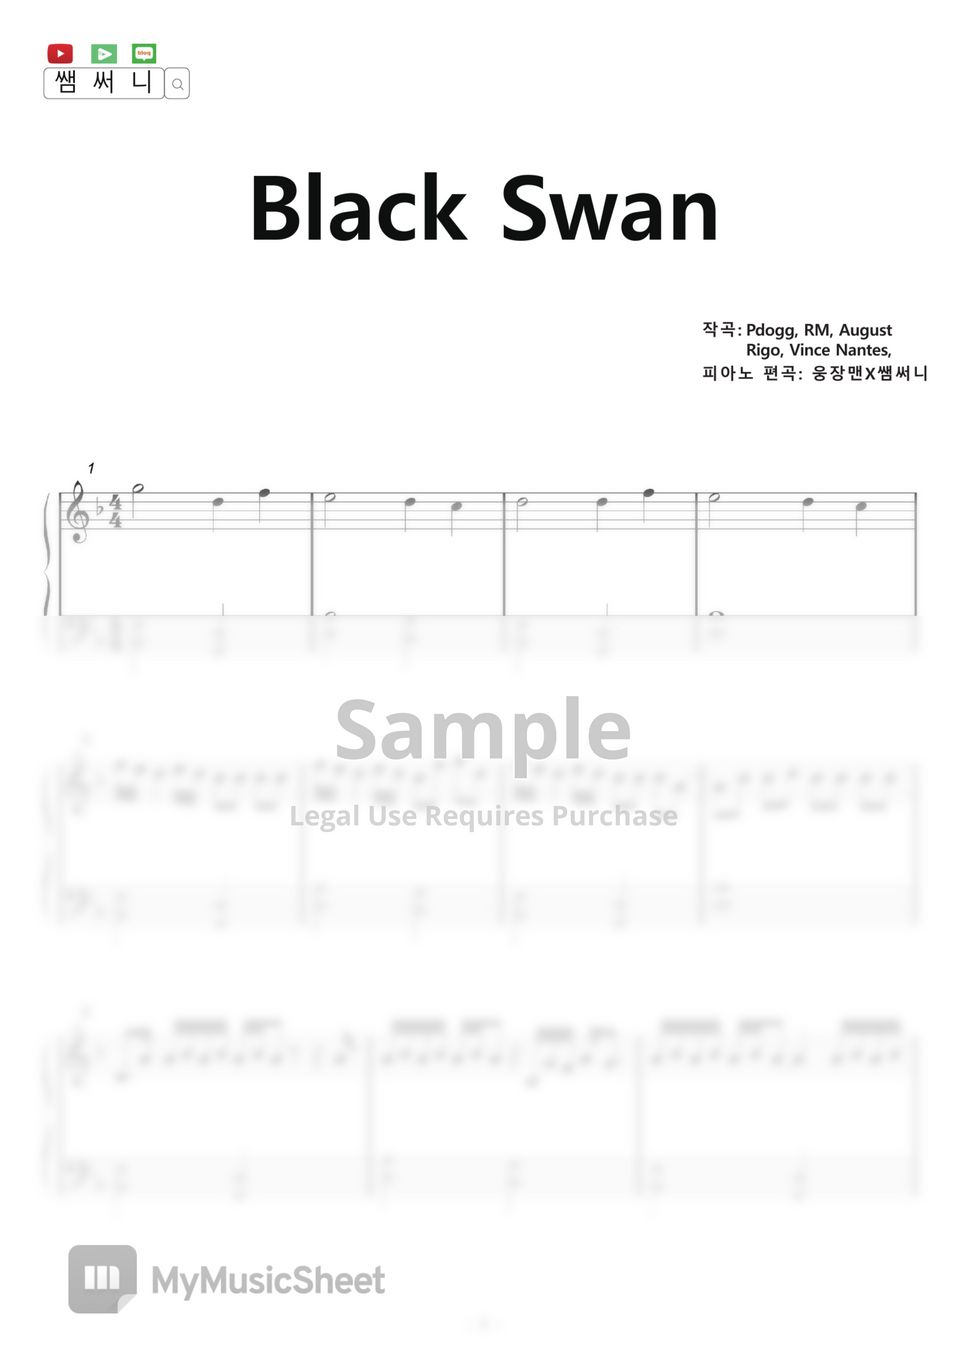 BTS - Black Swan (Piano iPad) by samsunny